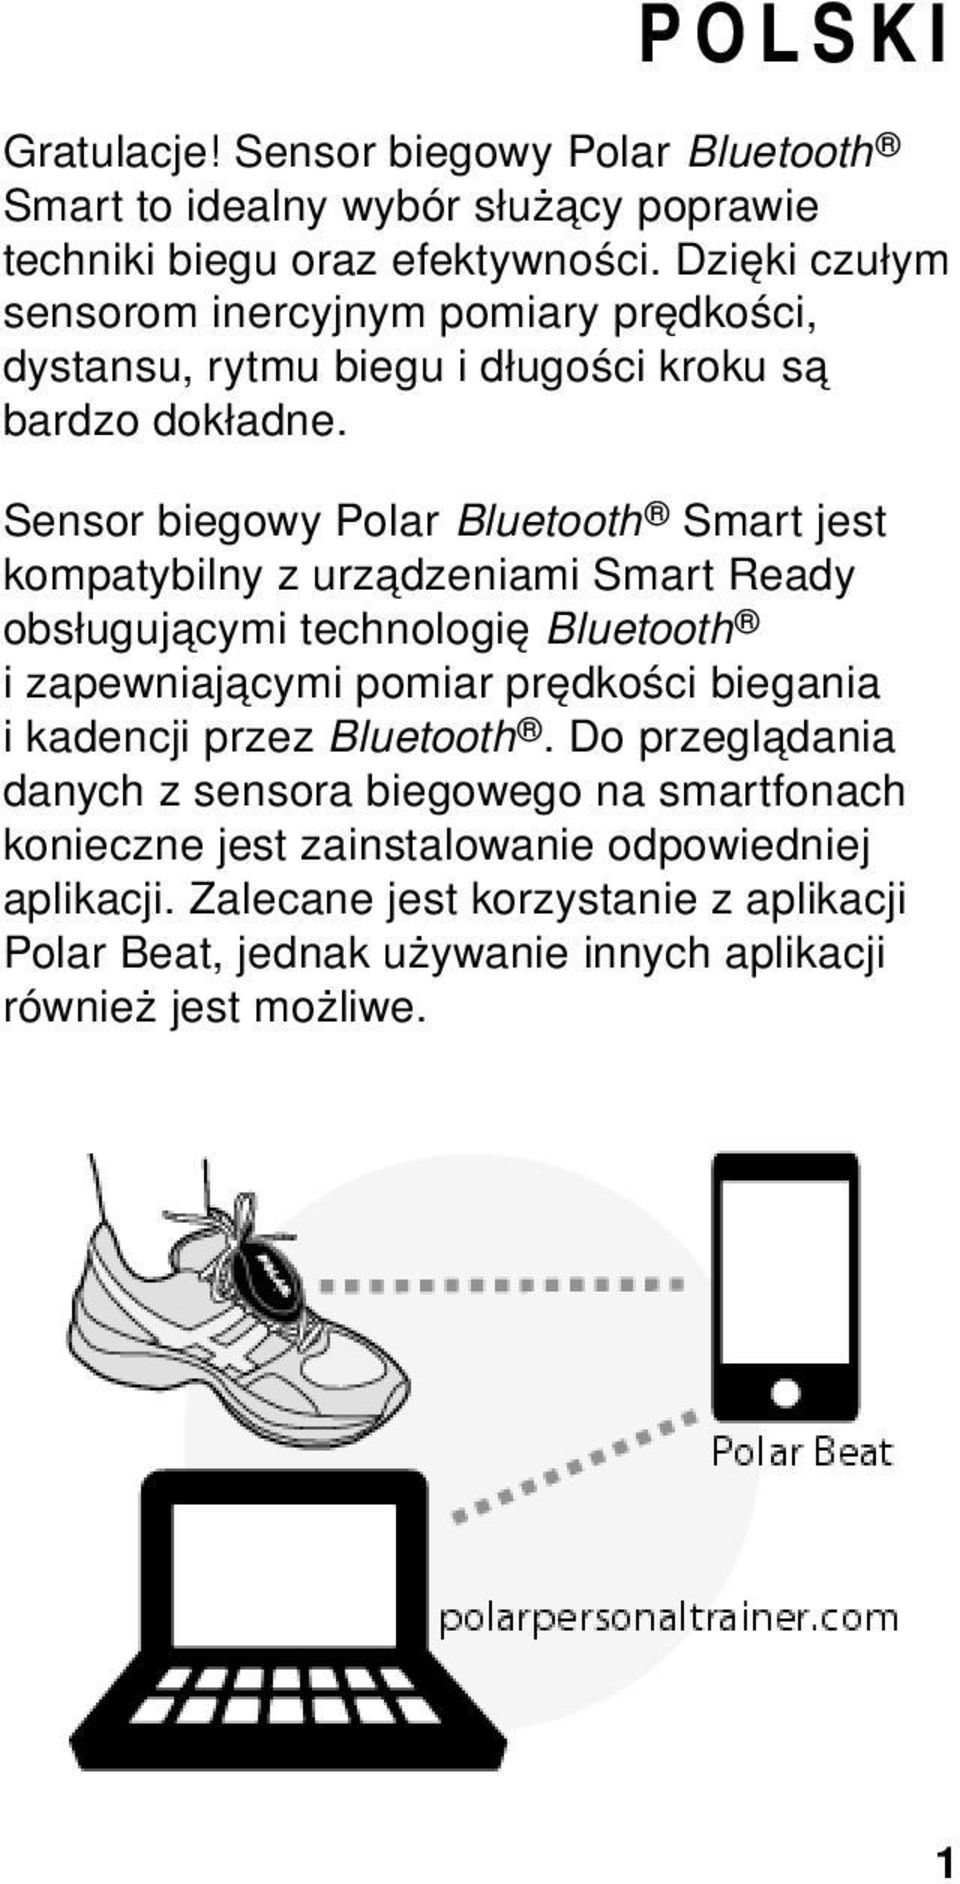 Sensor biegowy Polar Bluetooth Smart jest kompatybilny z urządzeniami Smart Ready obsługującymi technologię Bluetooth i zapewniającymi pomiar prędkości biegania